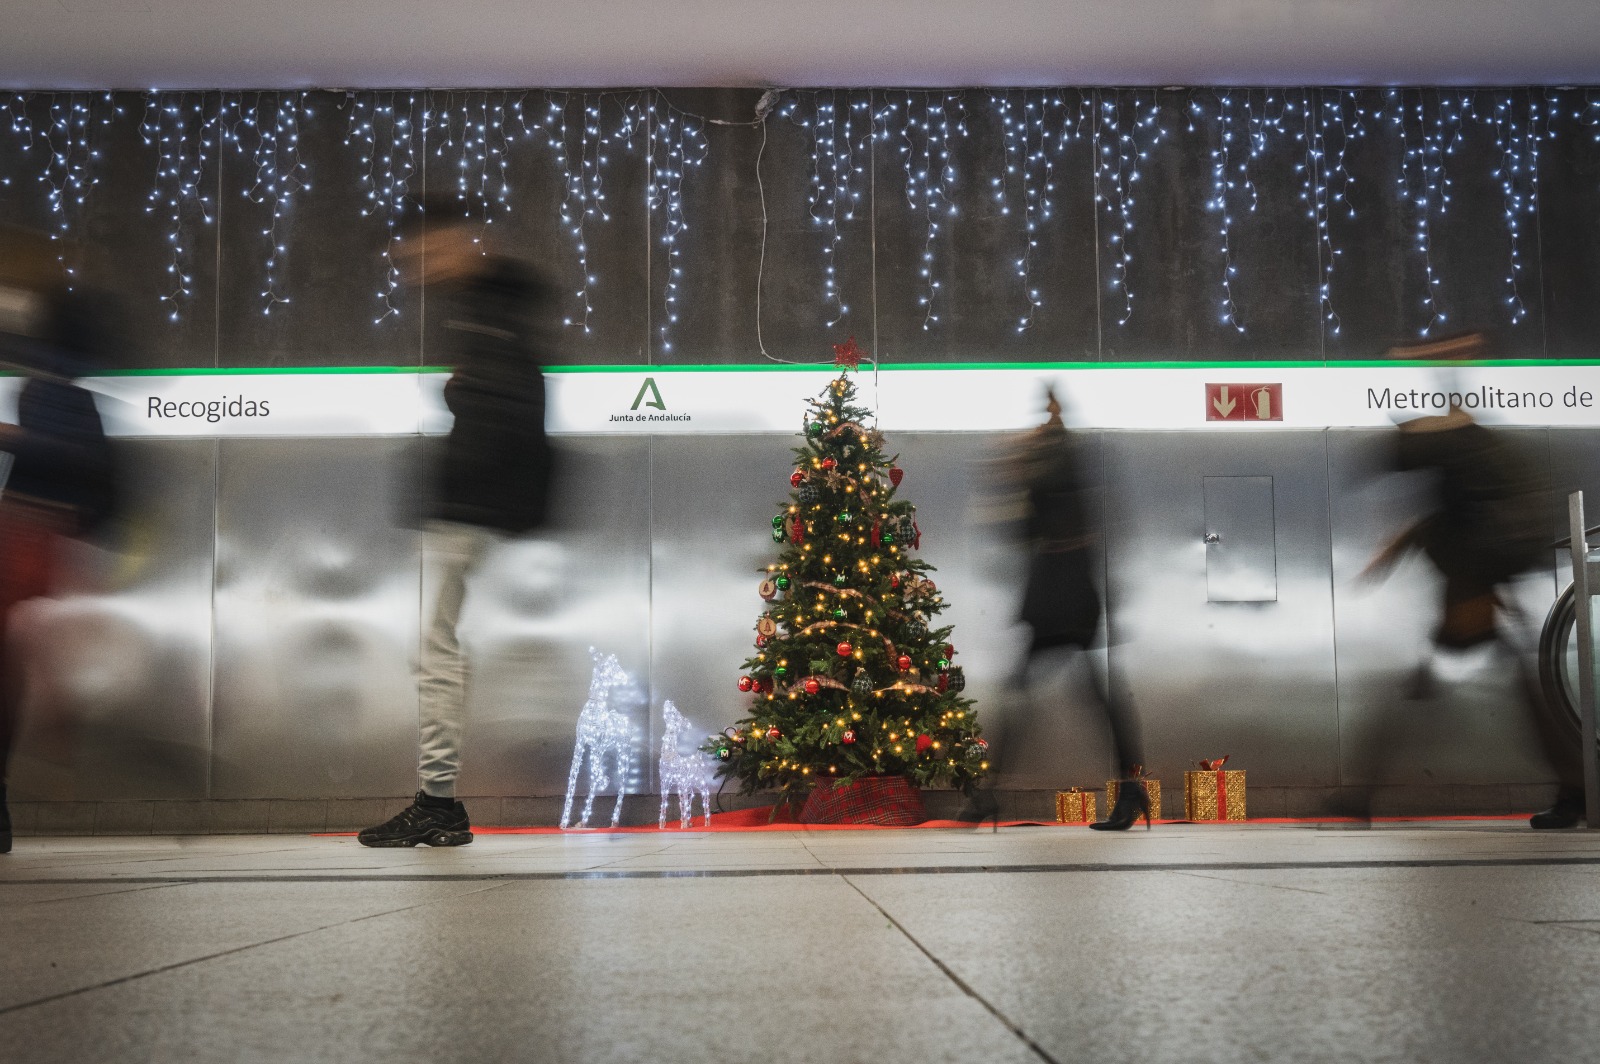 Los horarios y frecuencia del Metro de Granada se verán ampliados con motivo de las fiestas navideñas